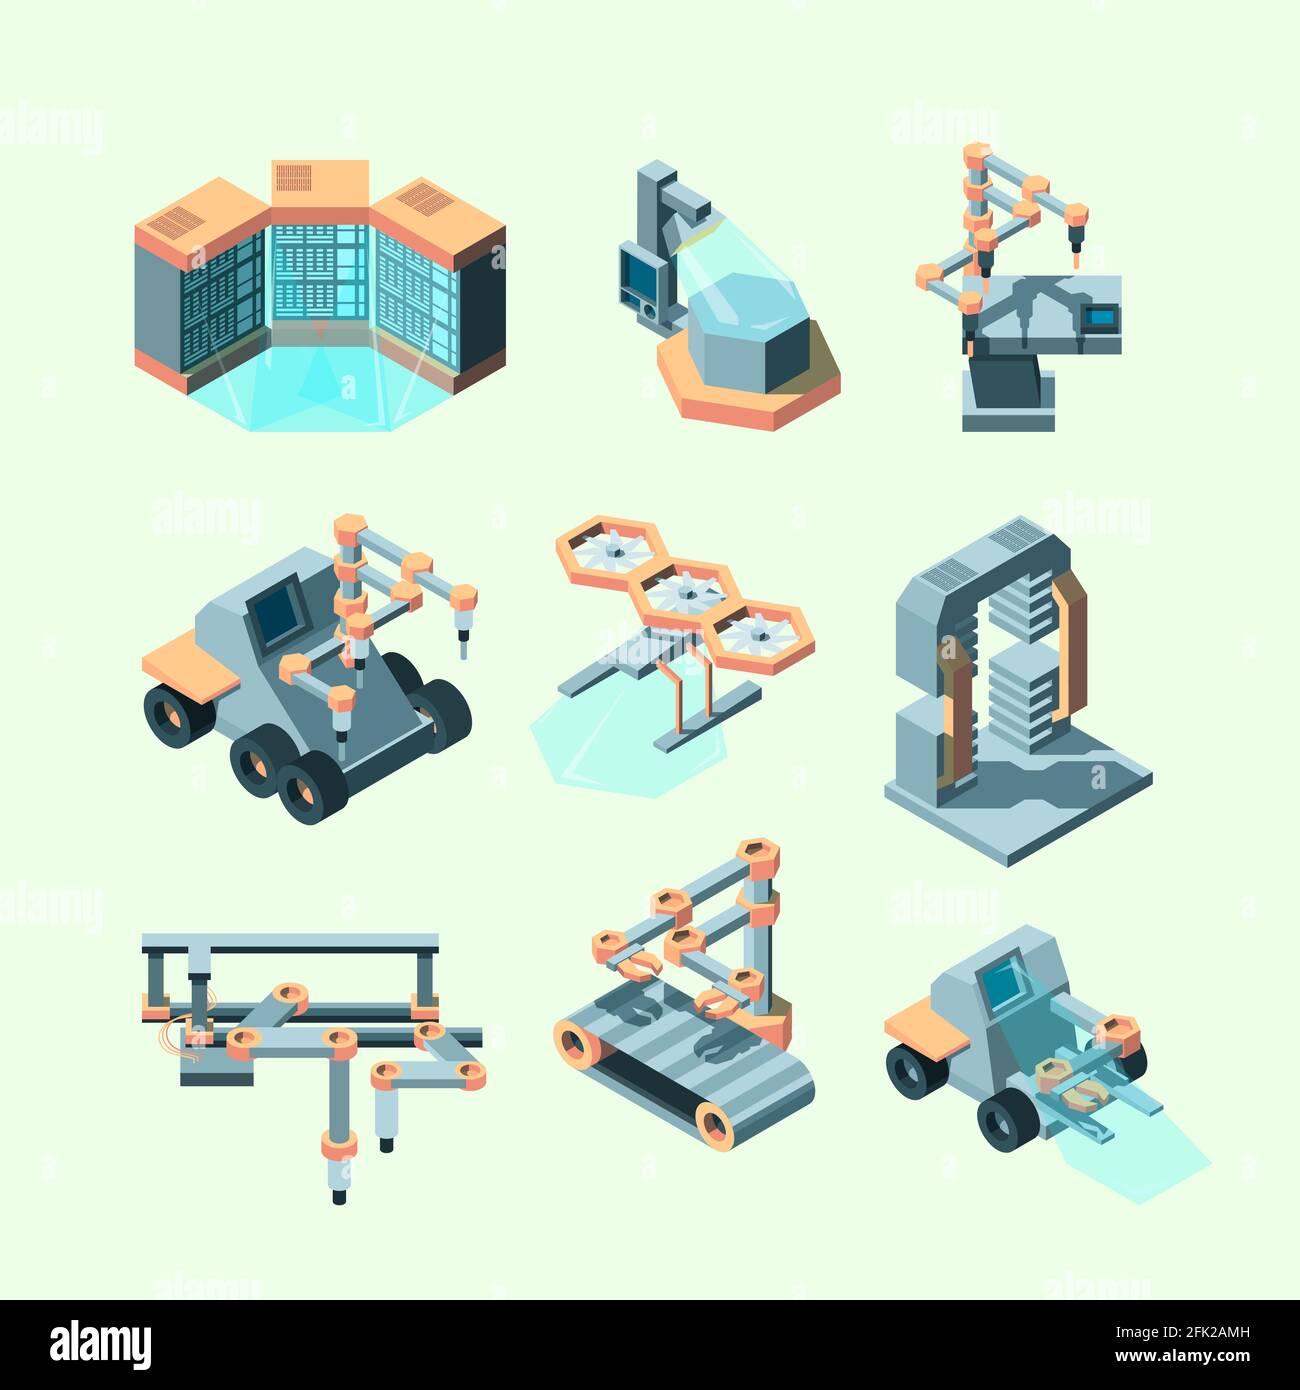 Branchenspezifische Isometrie. Intelligente Maschinen Roboter-Fernbedienung Produktionsprozesse elektronische Geräte Intelegence Werkzeuge Vektorbilder Stock Vektor